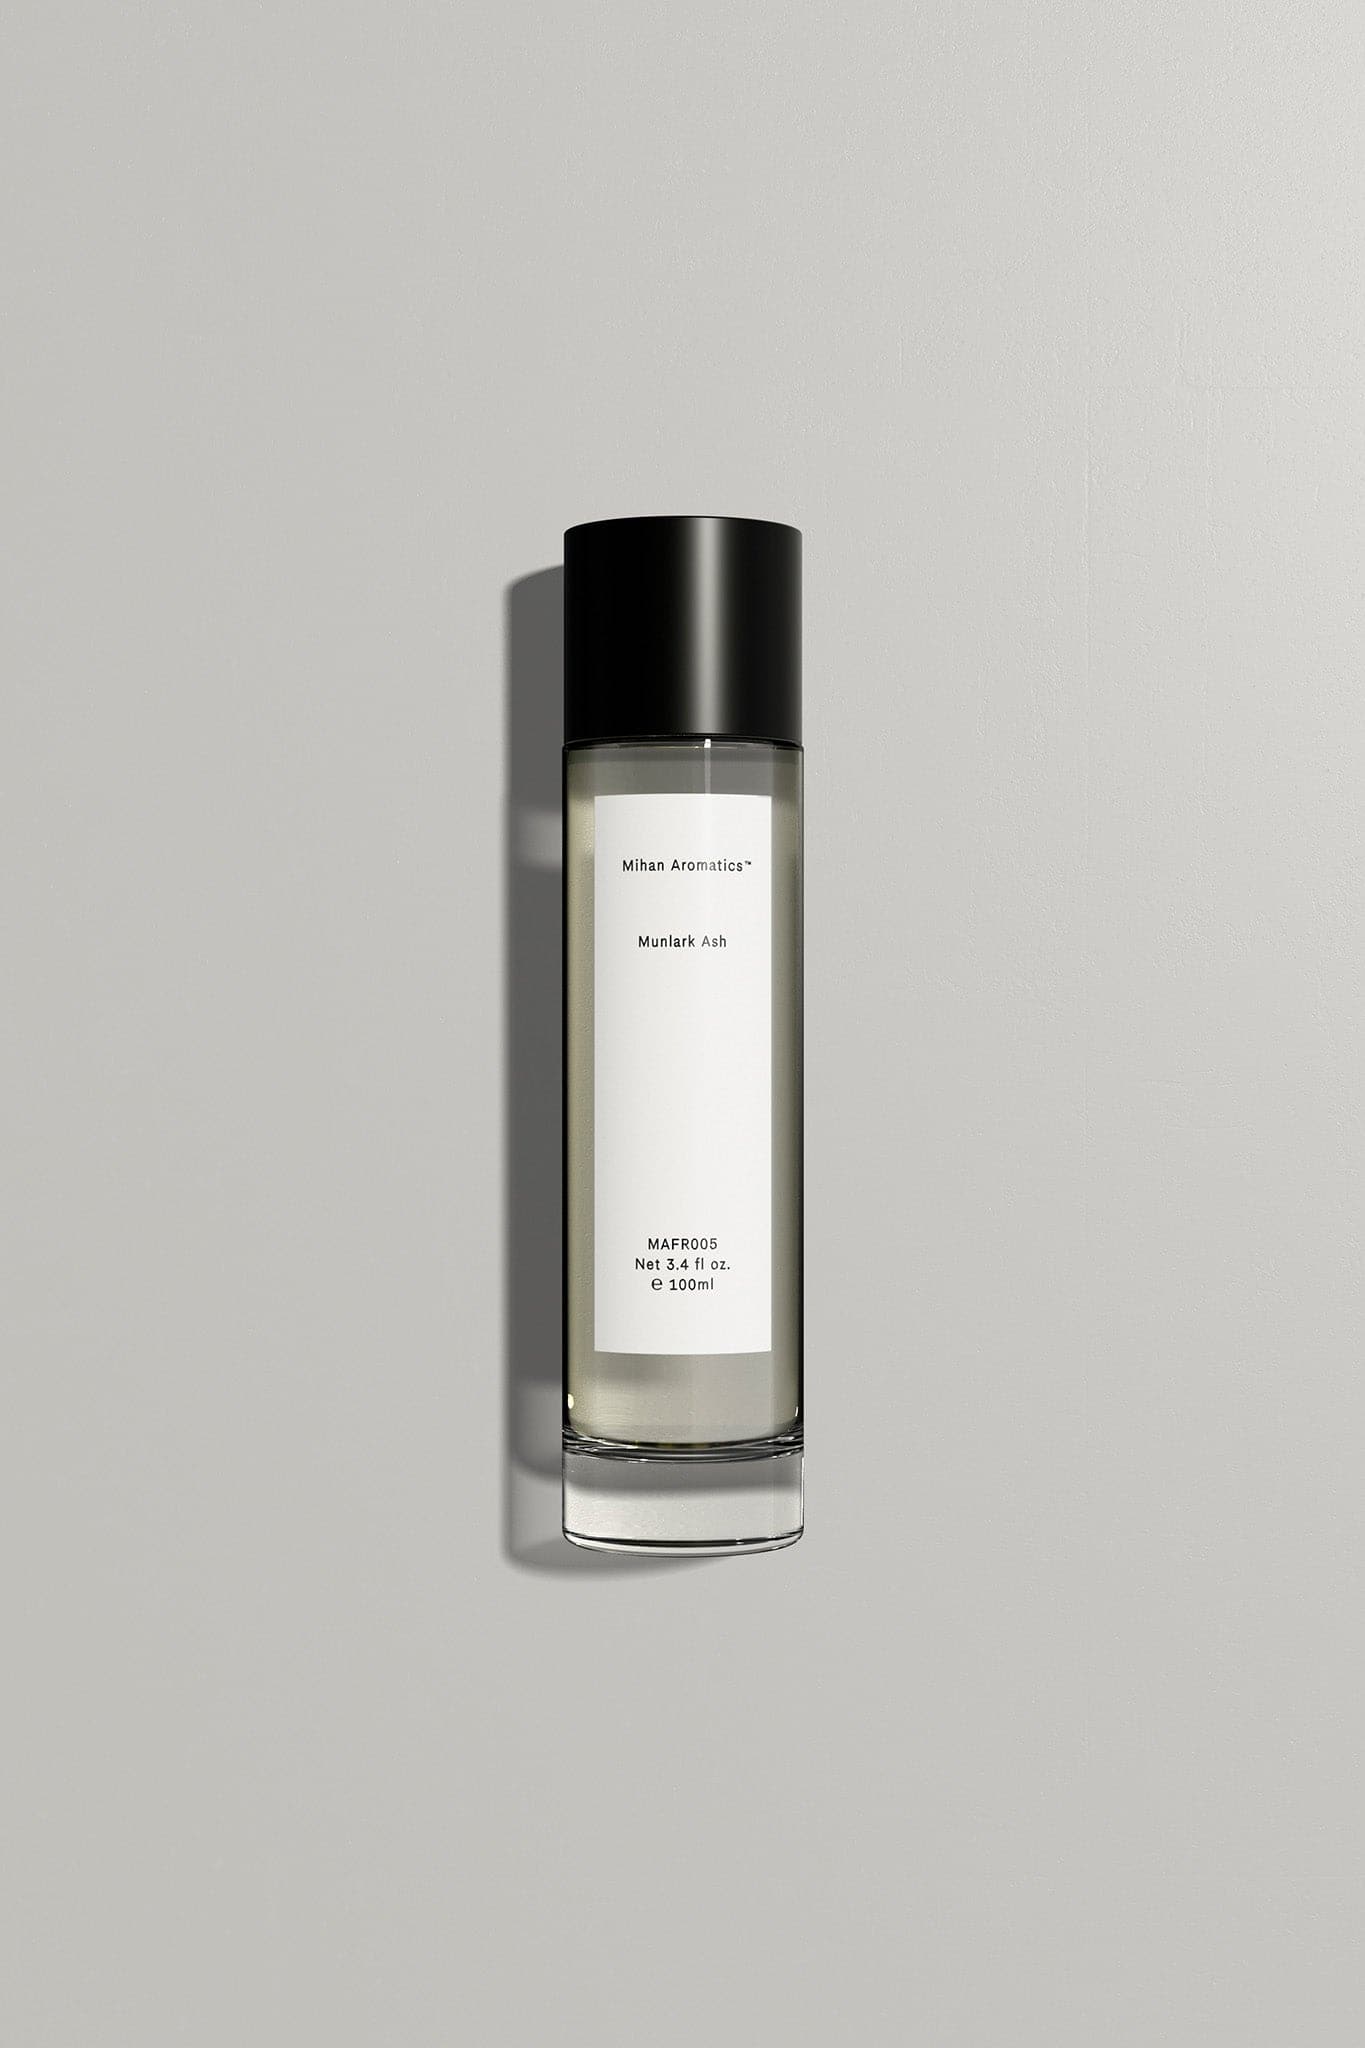 Mihan Aromatics Munlark Ash Parfum - Marz Designs AUMihan Aromatics